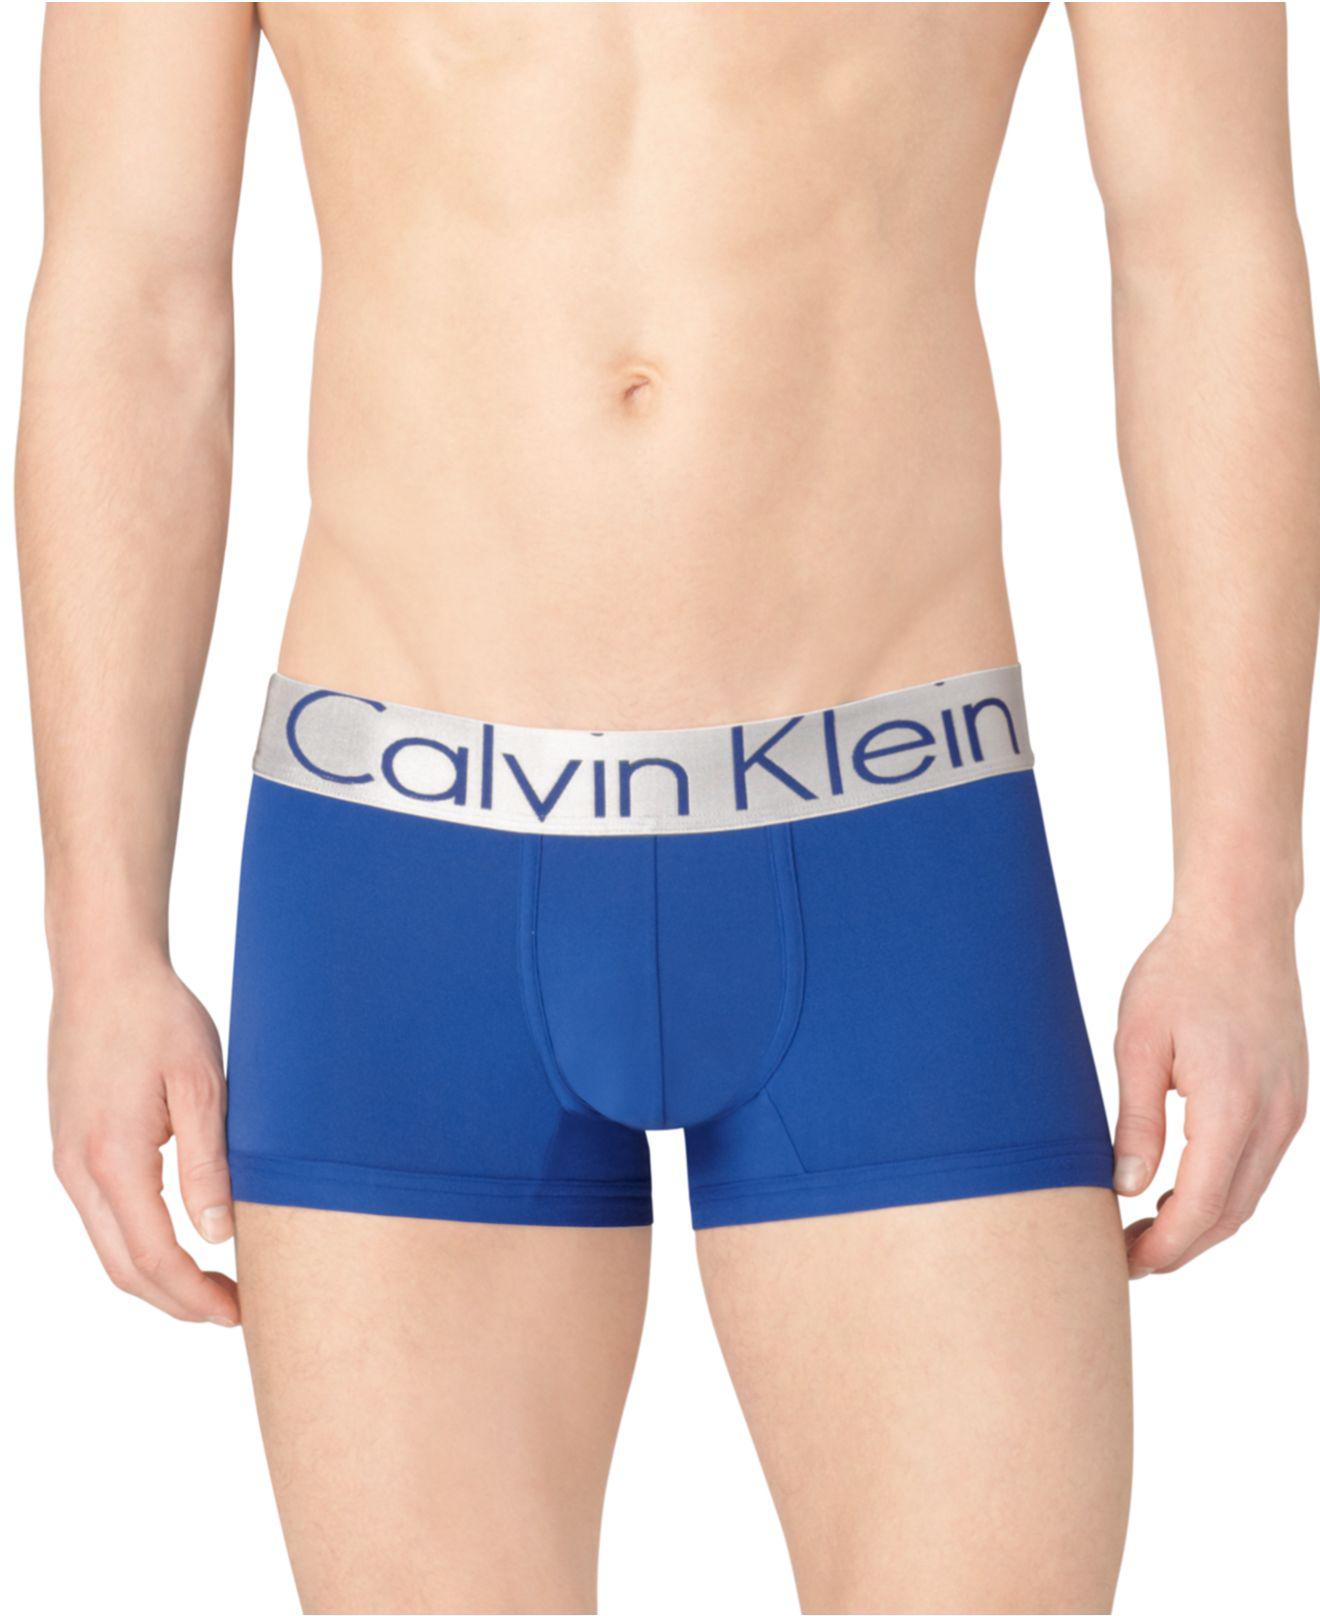 Lyst - Calvin Klein Underwear, Steel Micro Low Rise Trunk U2716 in Blue